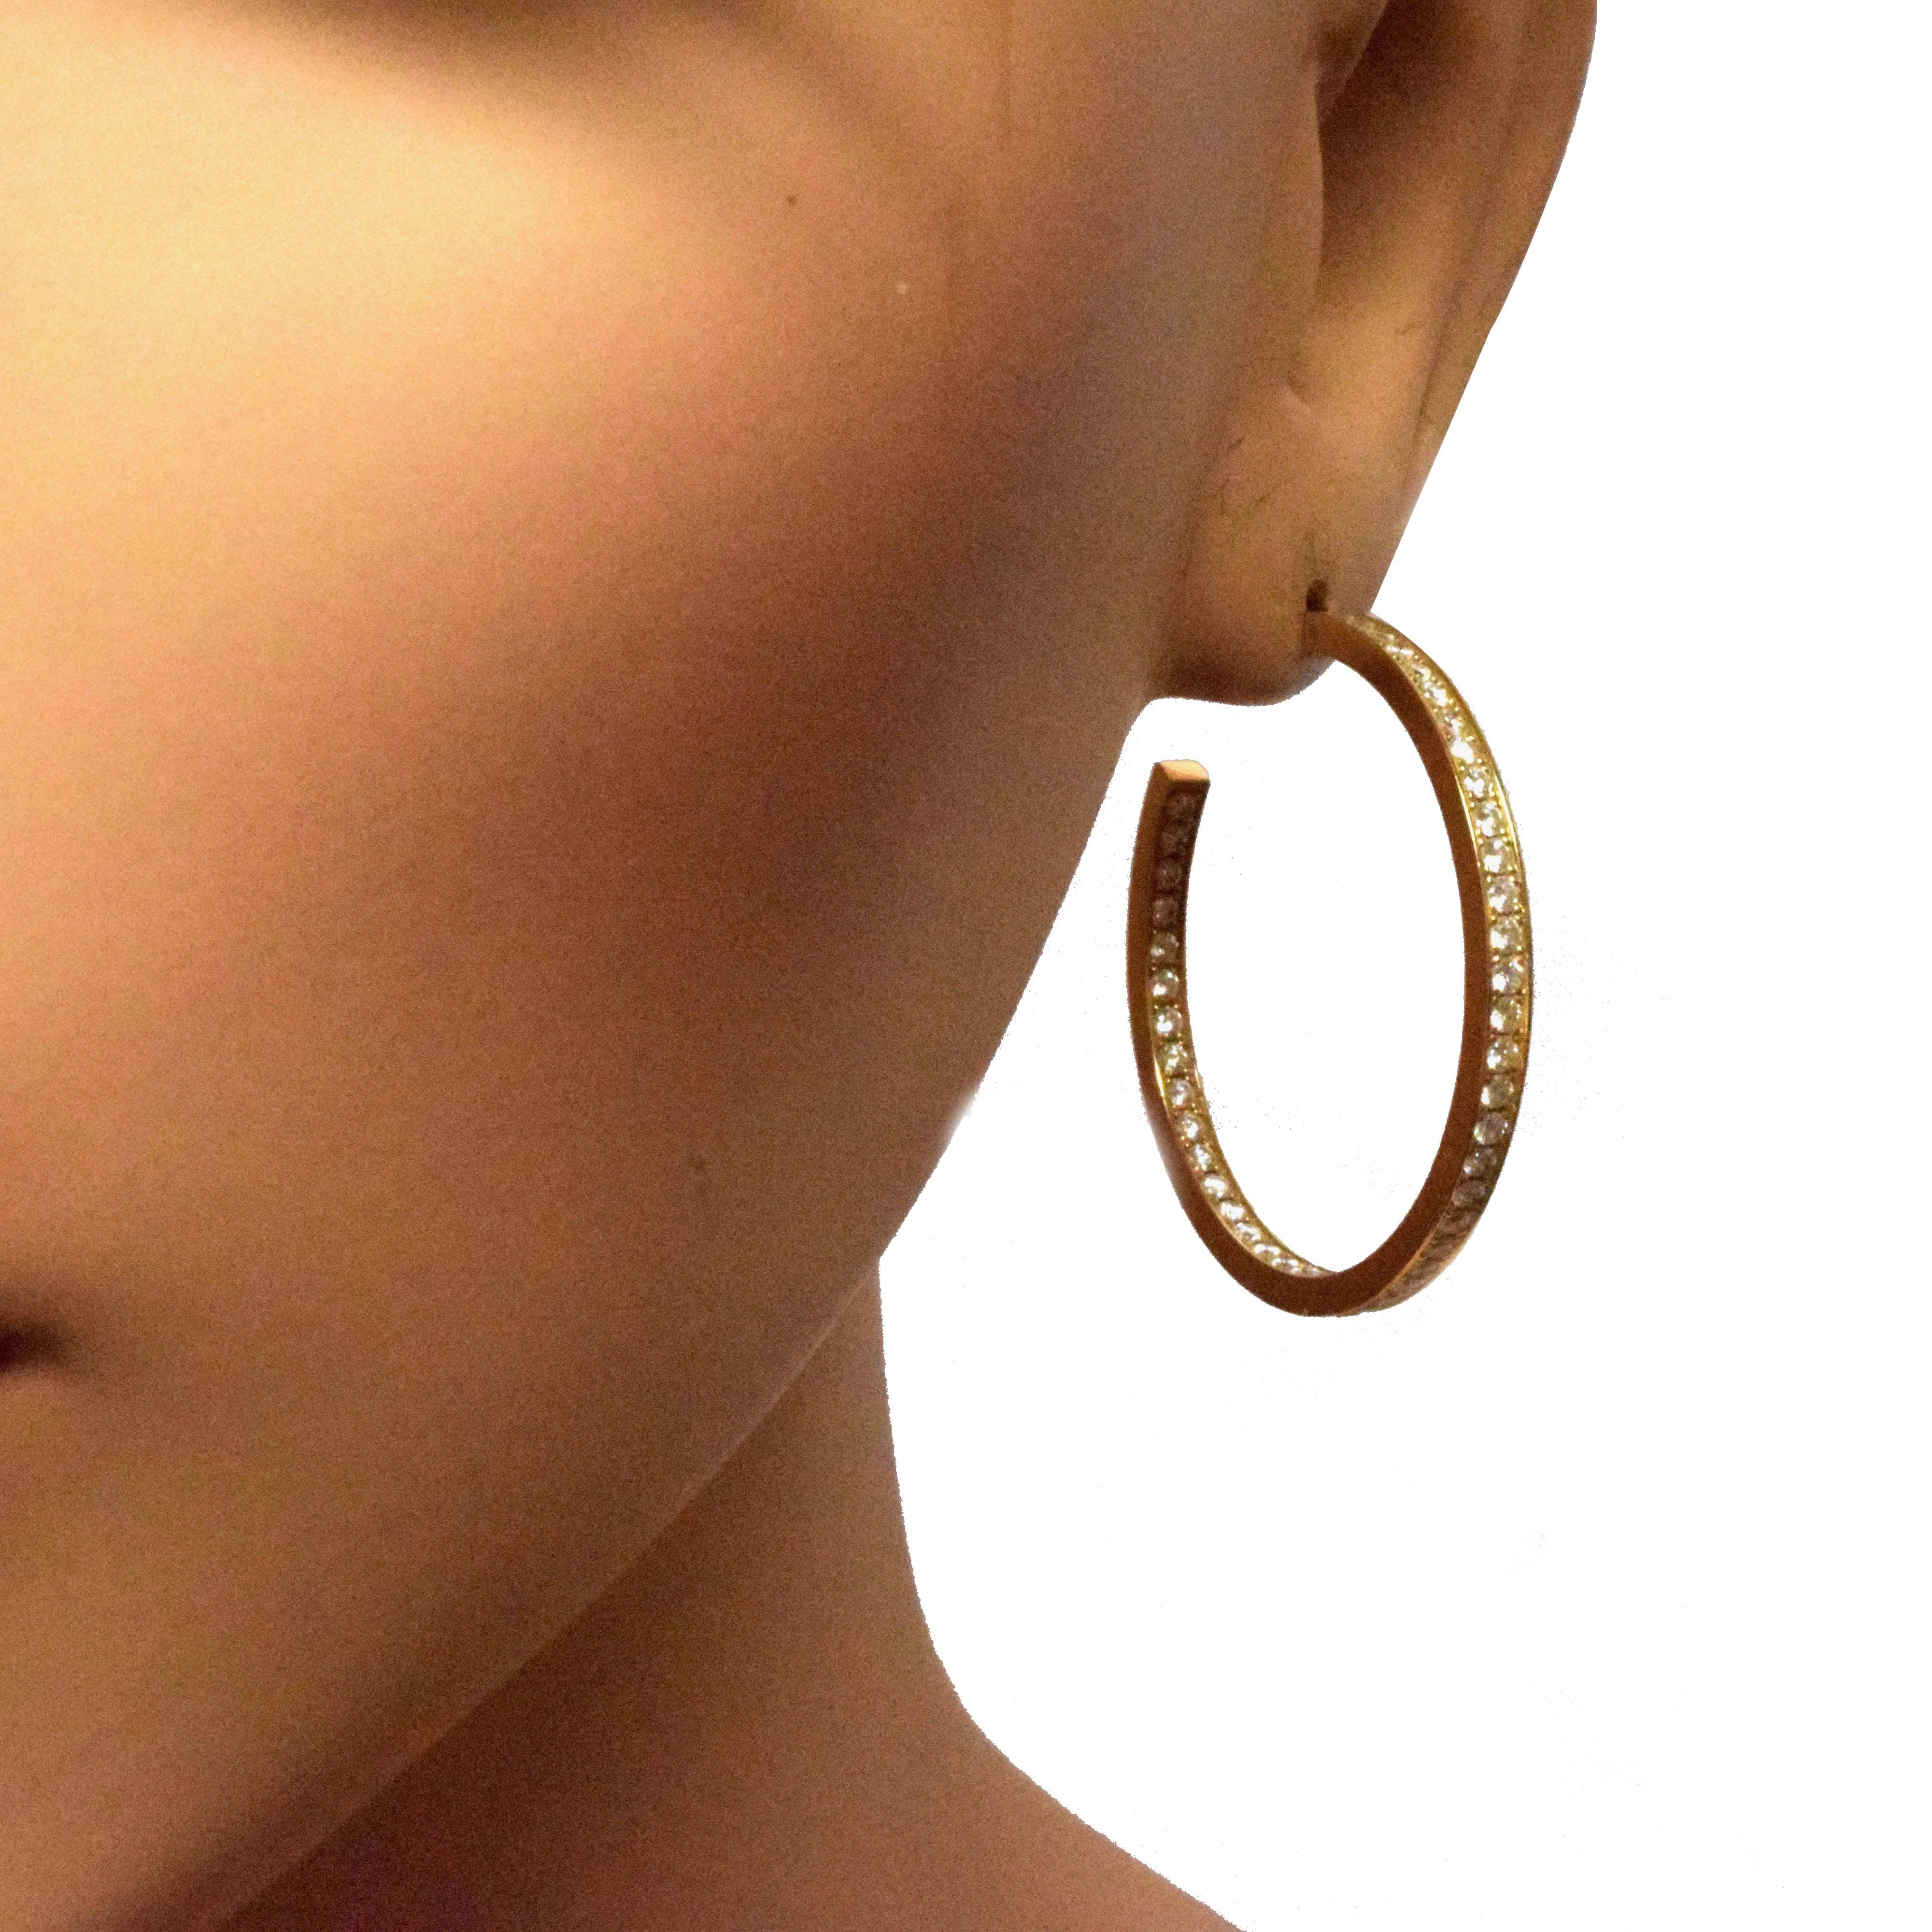 Cartier Inside Out Diamond Hoop Earrings in 18 Karat Yellow Gold For Sale 1